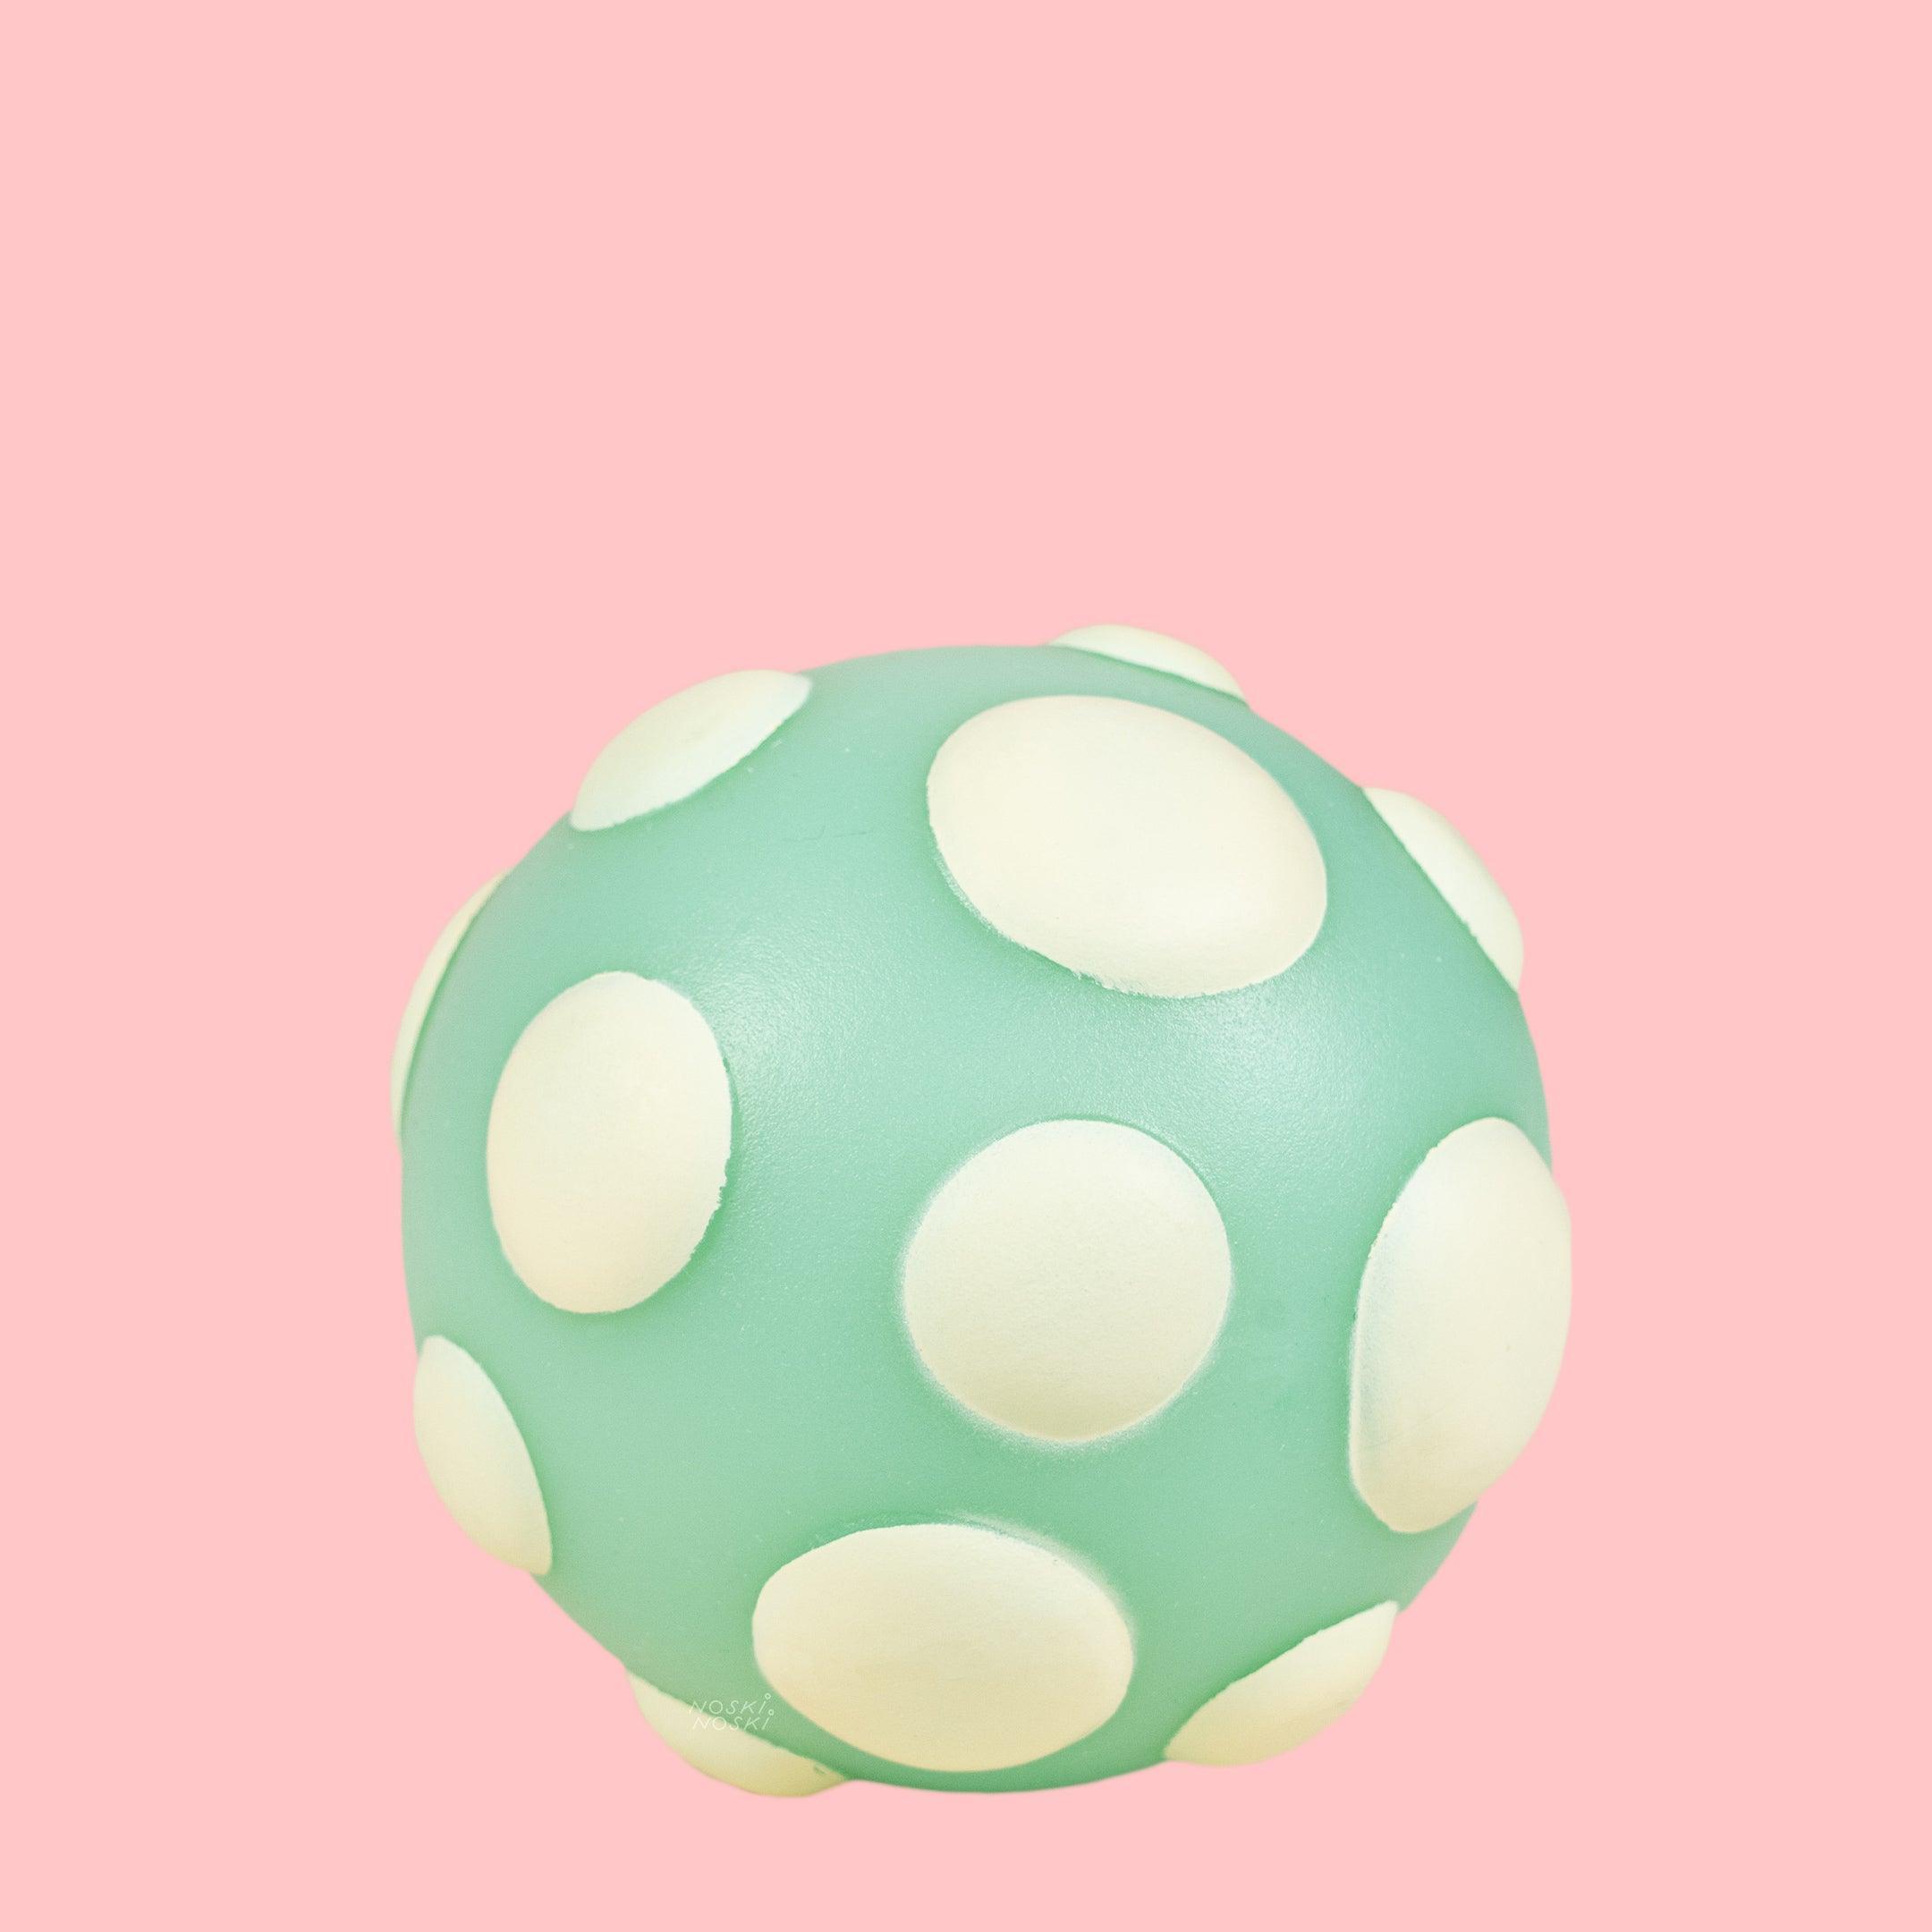 B.Toys: crazy sensory balls Ball-a-Balloos - Kidealo